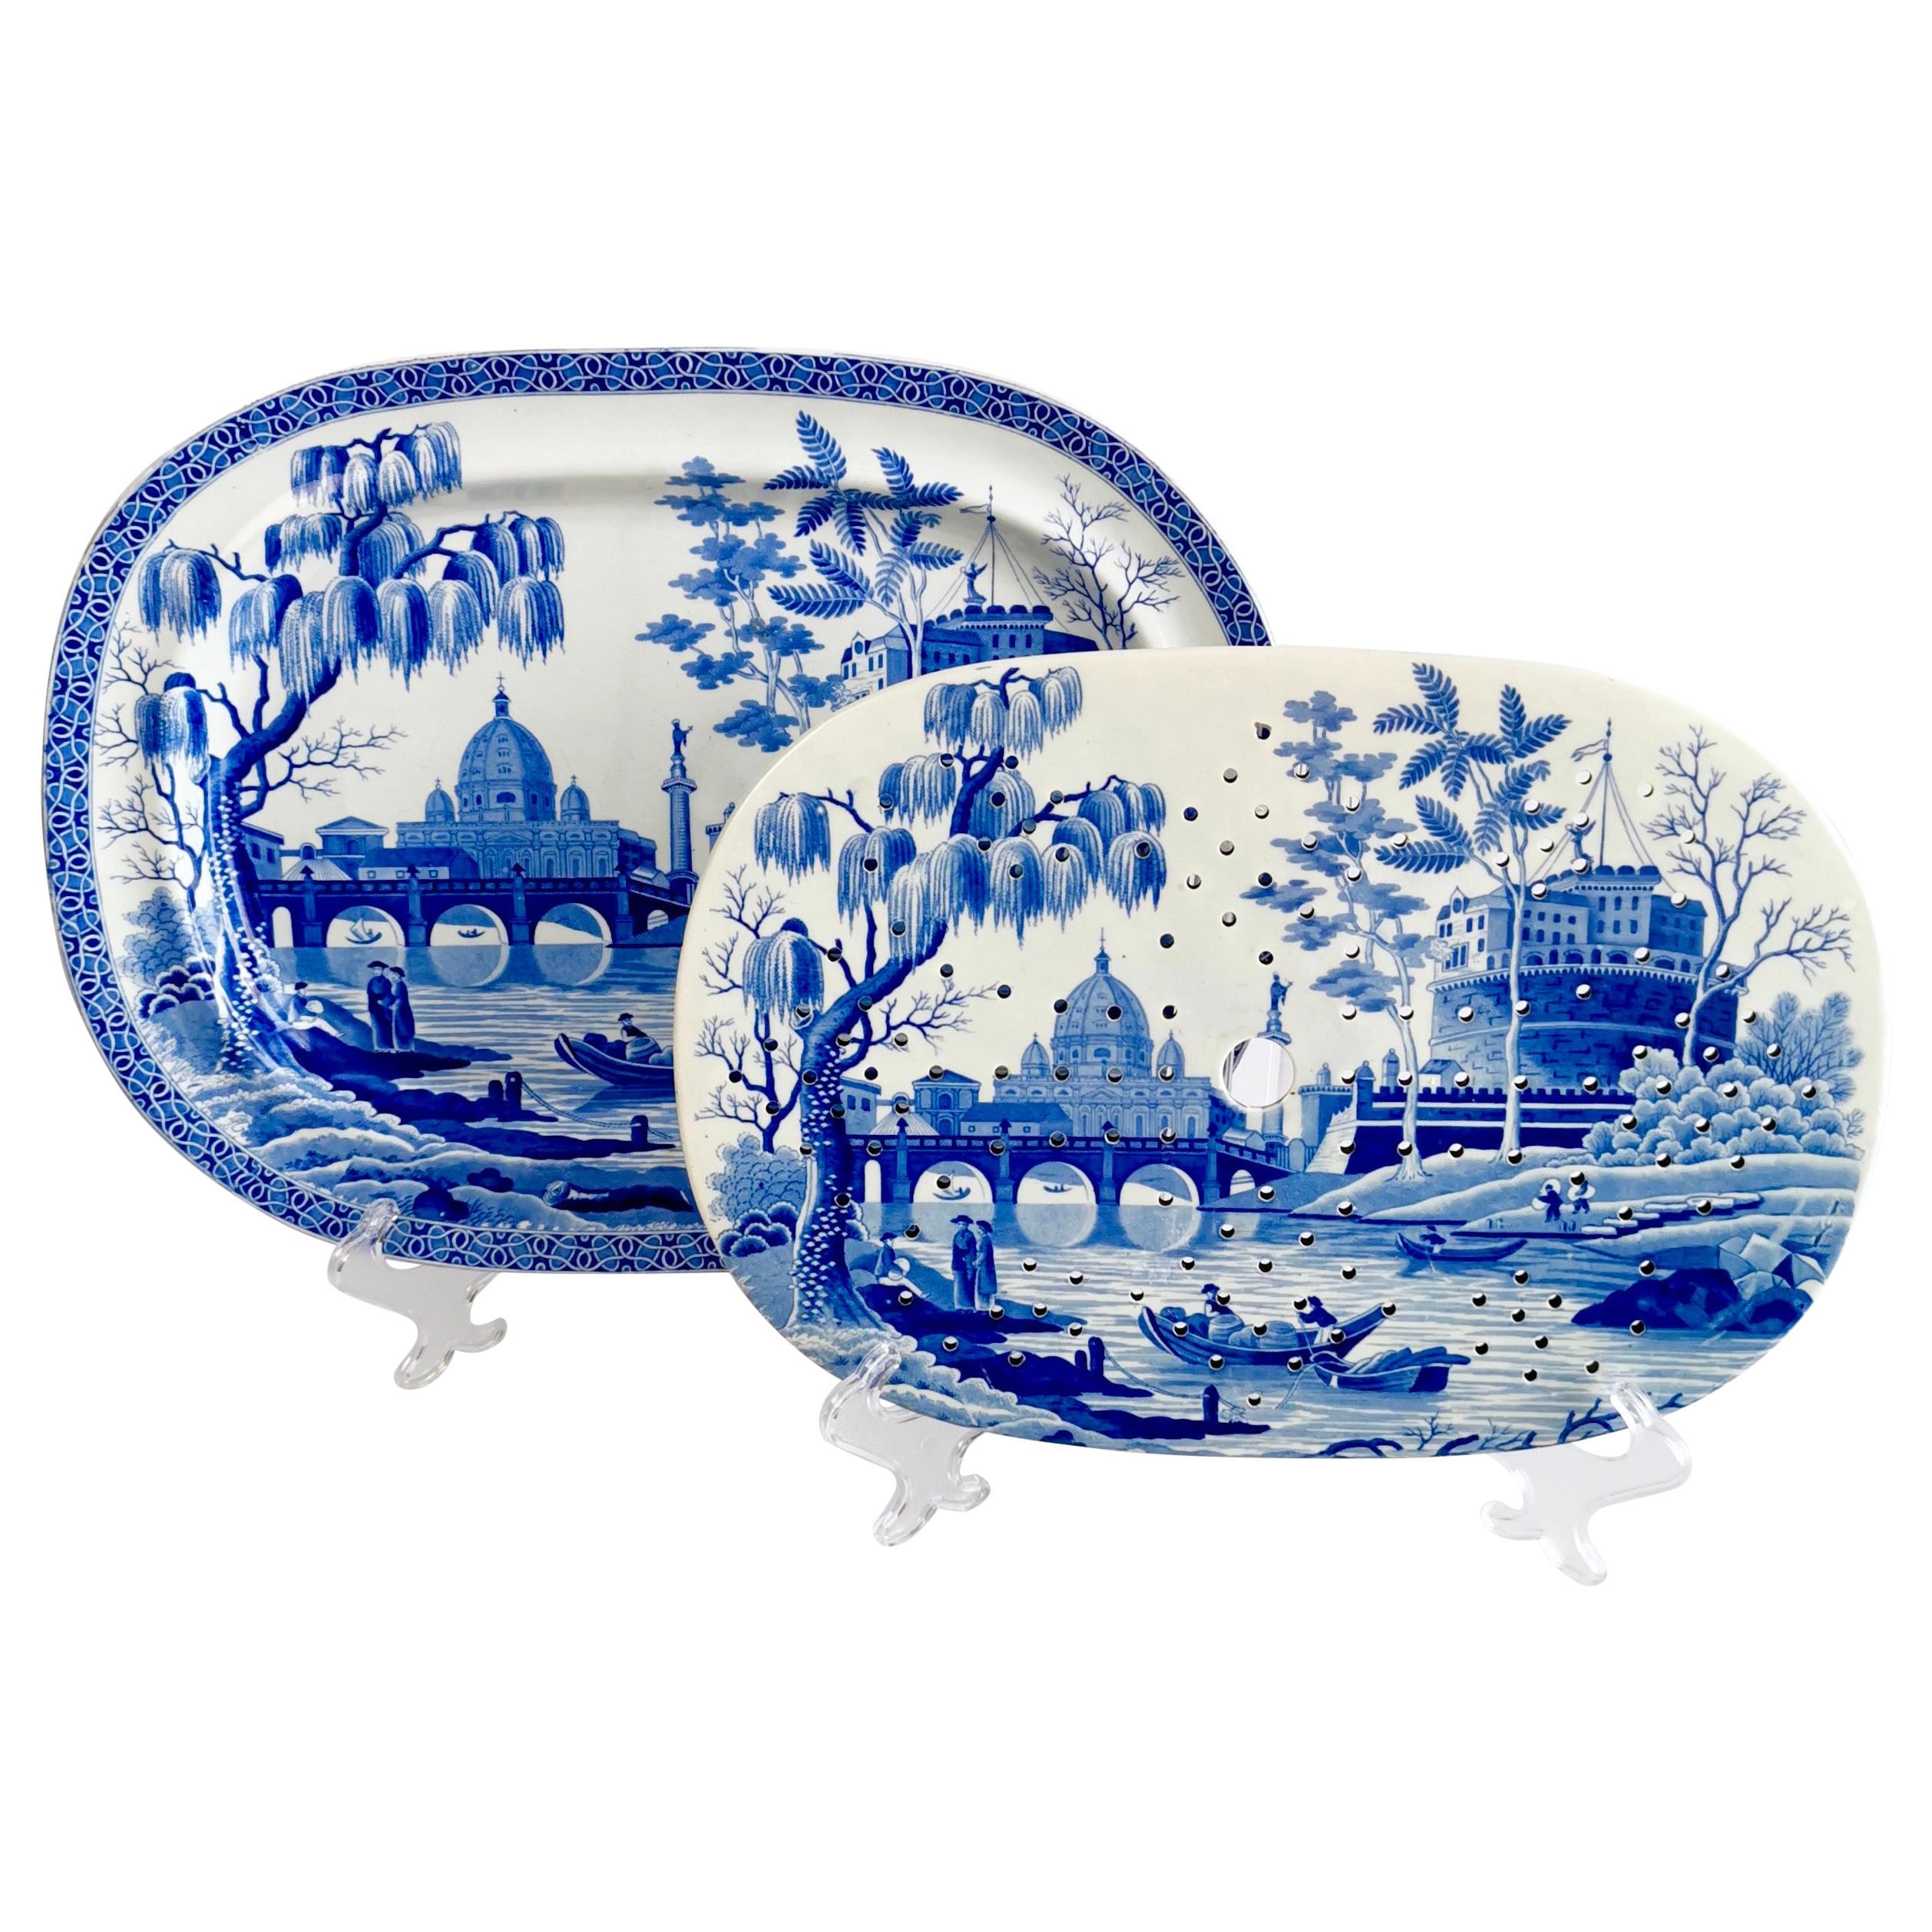 Spode Pearlware Meat Platter and Drainer, "Tiber" Blue & White Regency 1811-1833